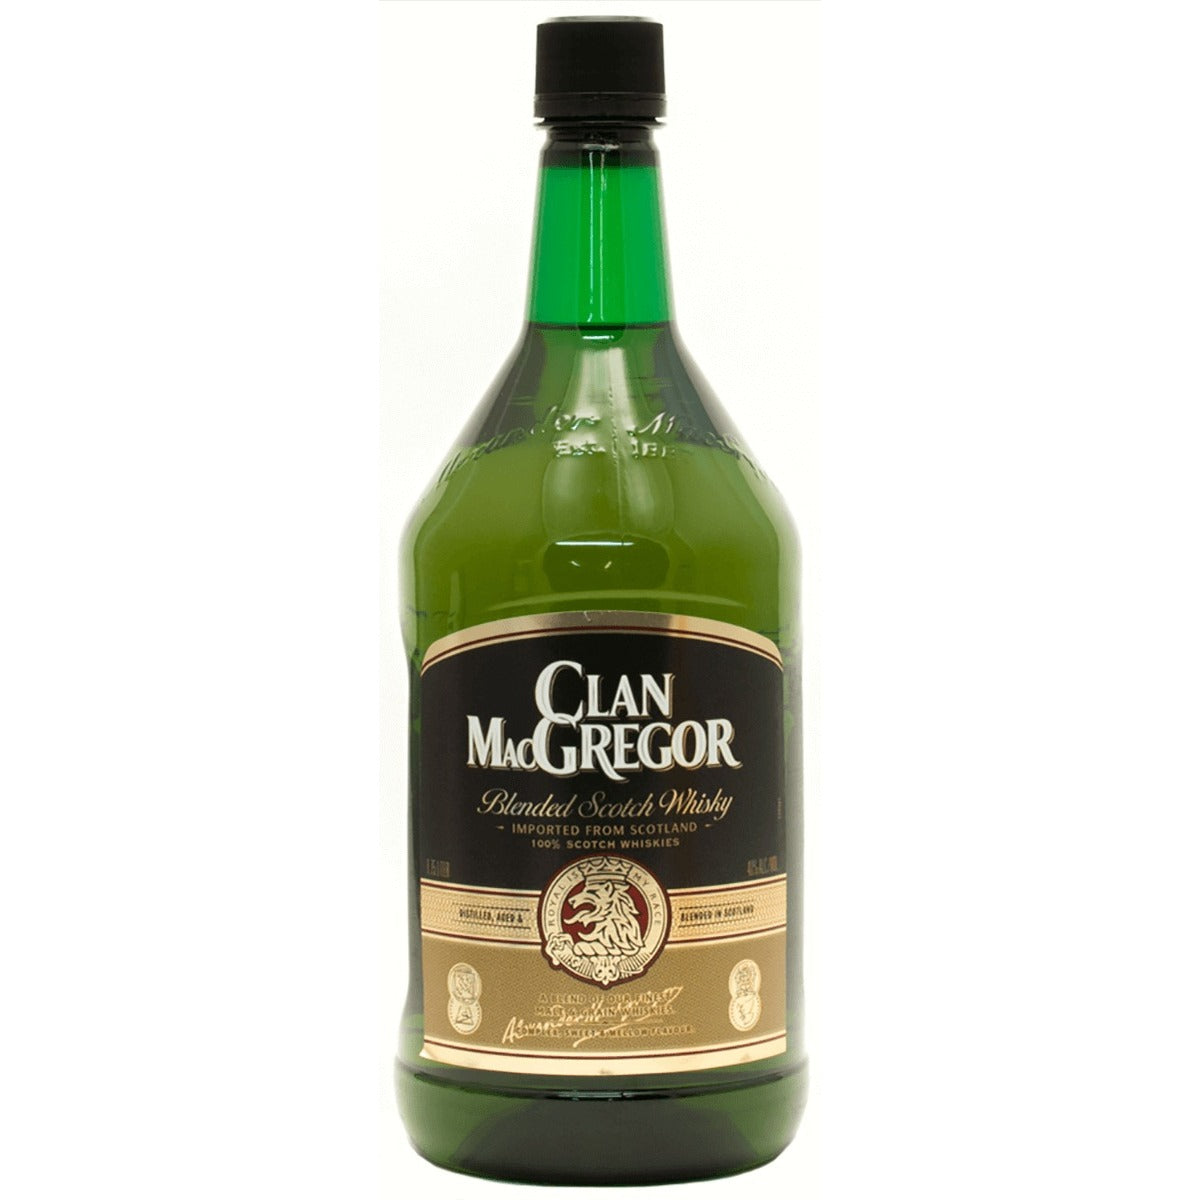 CLAN MACGREGOR SCOTH 1.75L